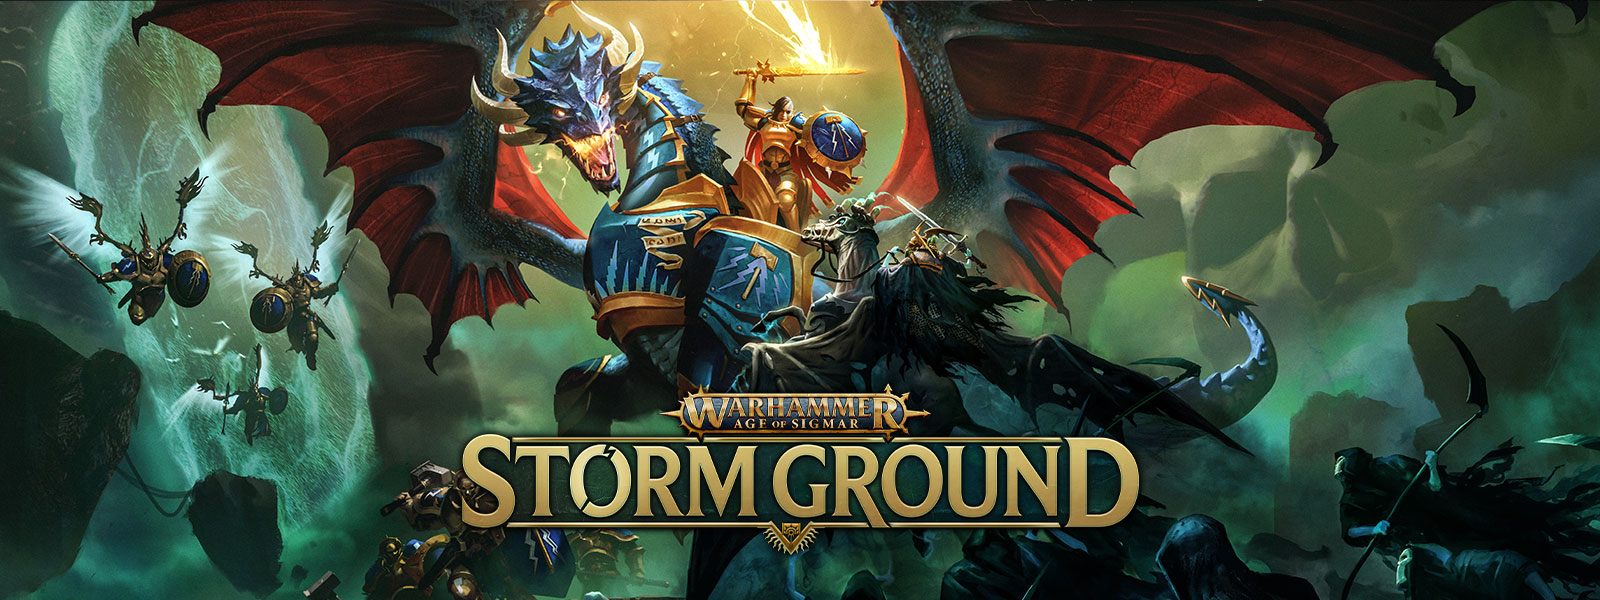 Warhammer Age of Sigmar: Storm Ground: En kriger som rir på en pansret drage som kjemper mot en skjeletthær på flukt.